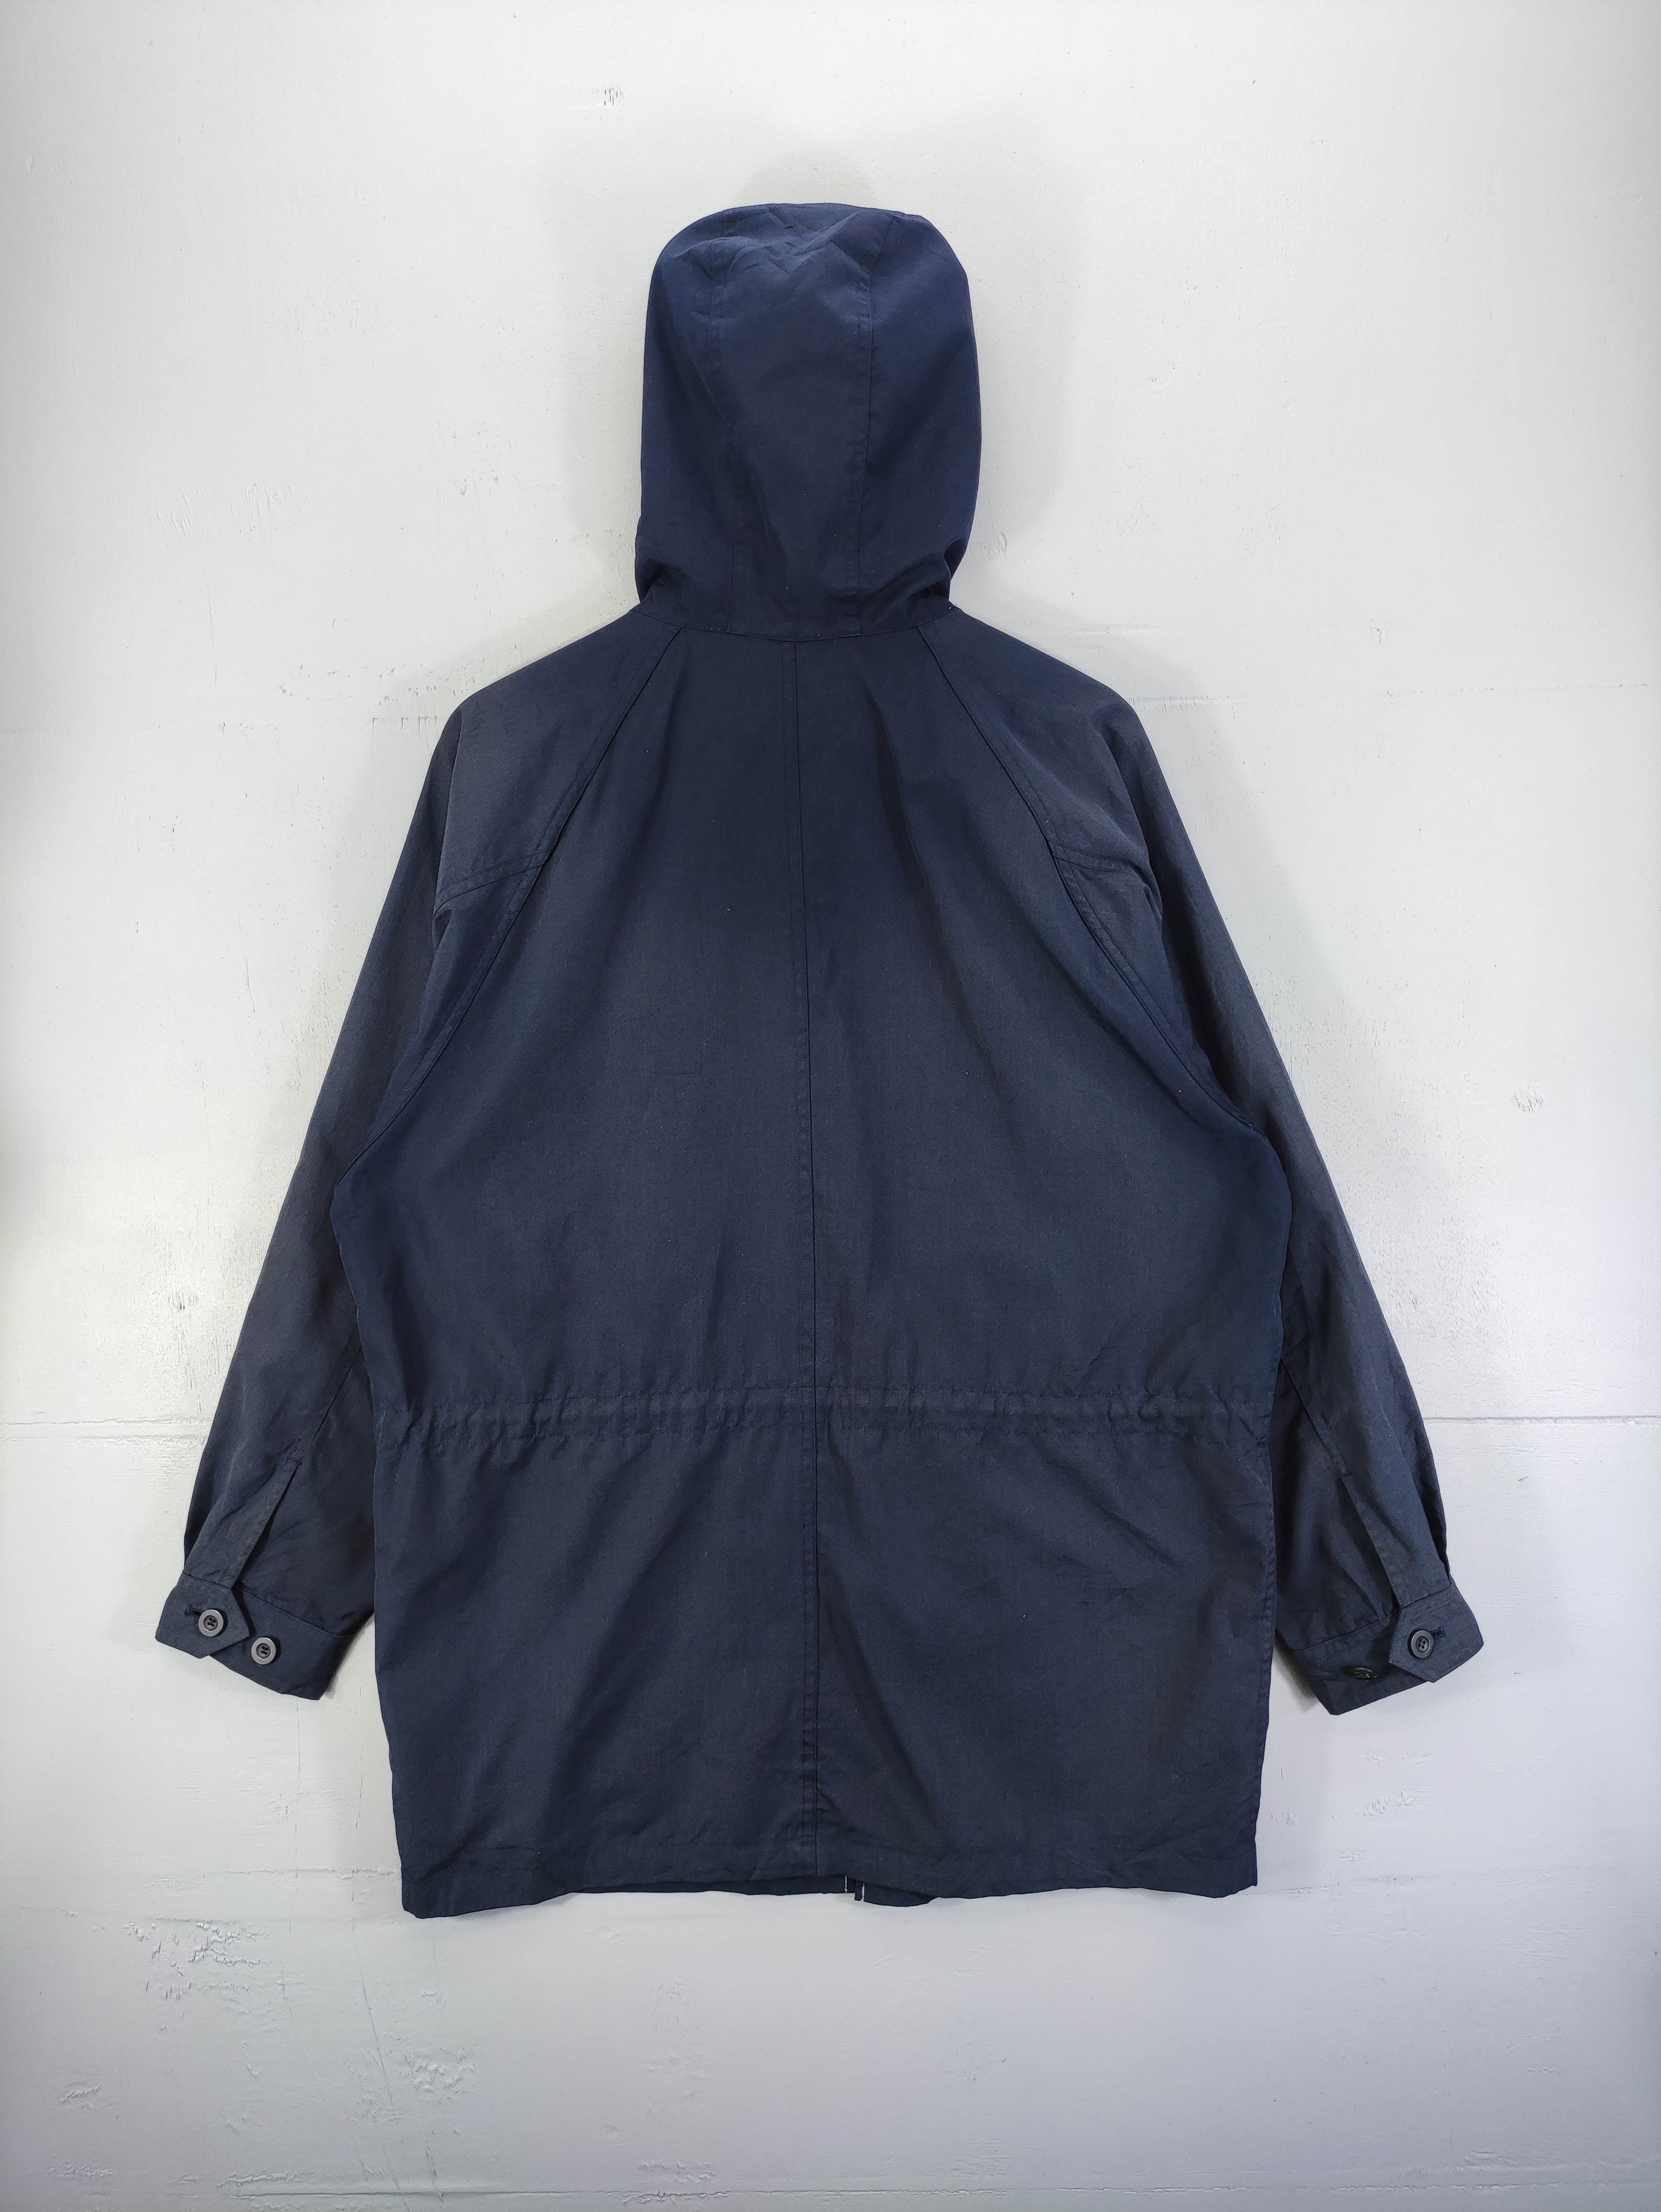 Vintage Pluvious Jacket Hoodie Zipper - 7